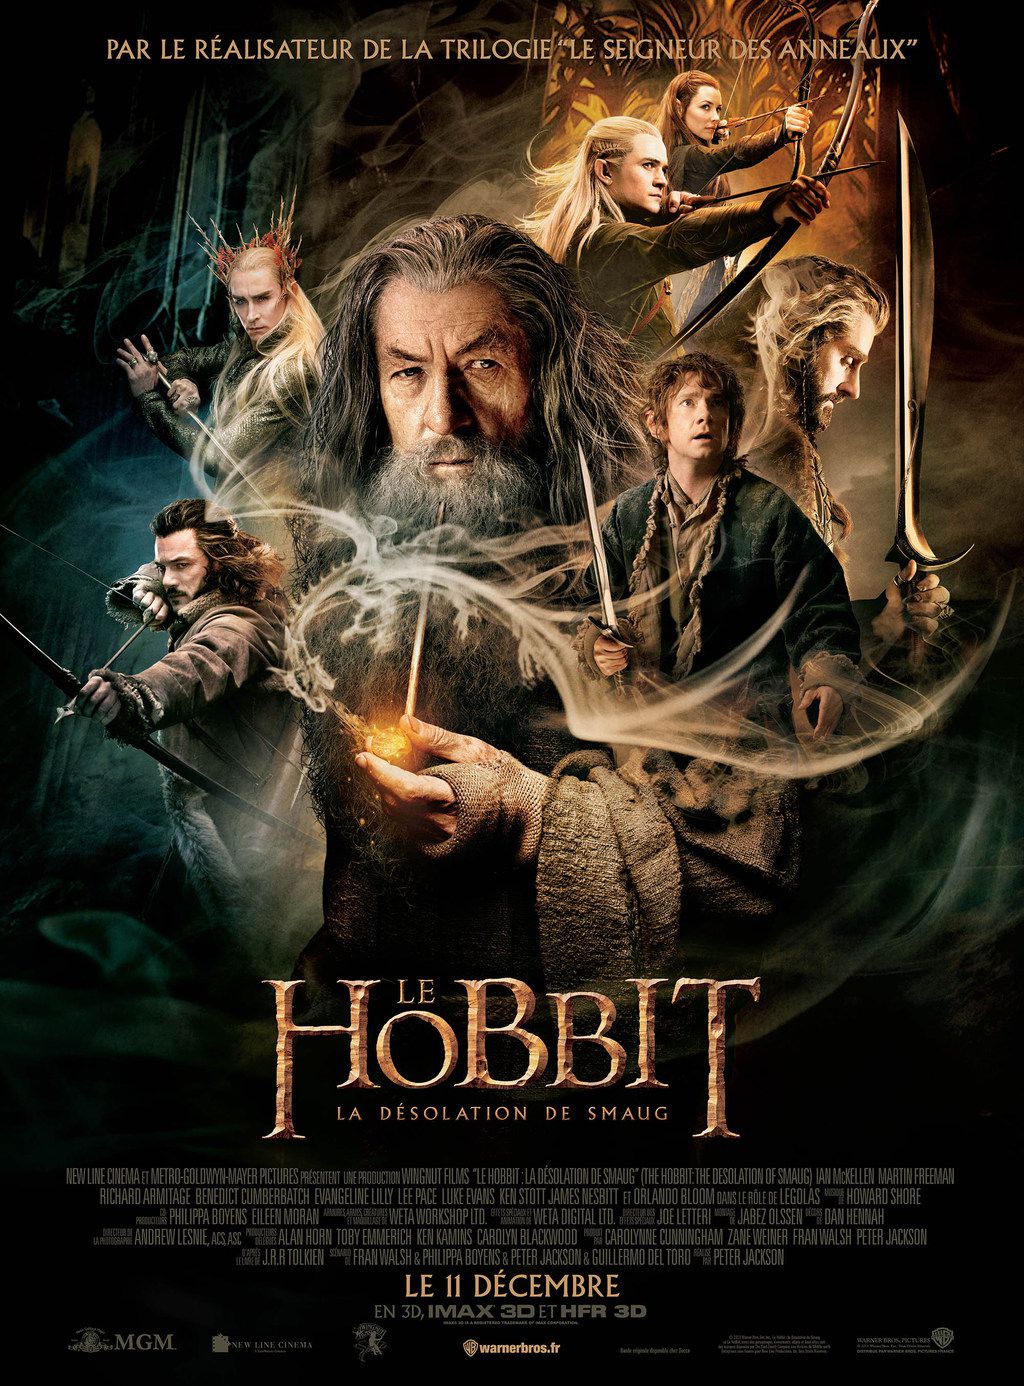 Le Hobbit : La Désolation de Smaug - Film (2013) streaming VF gratuit complet